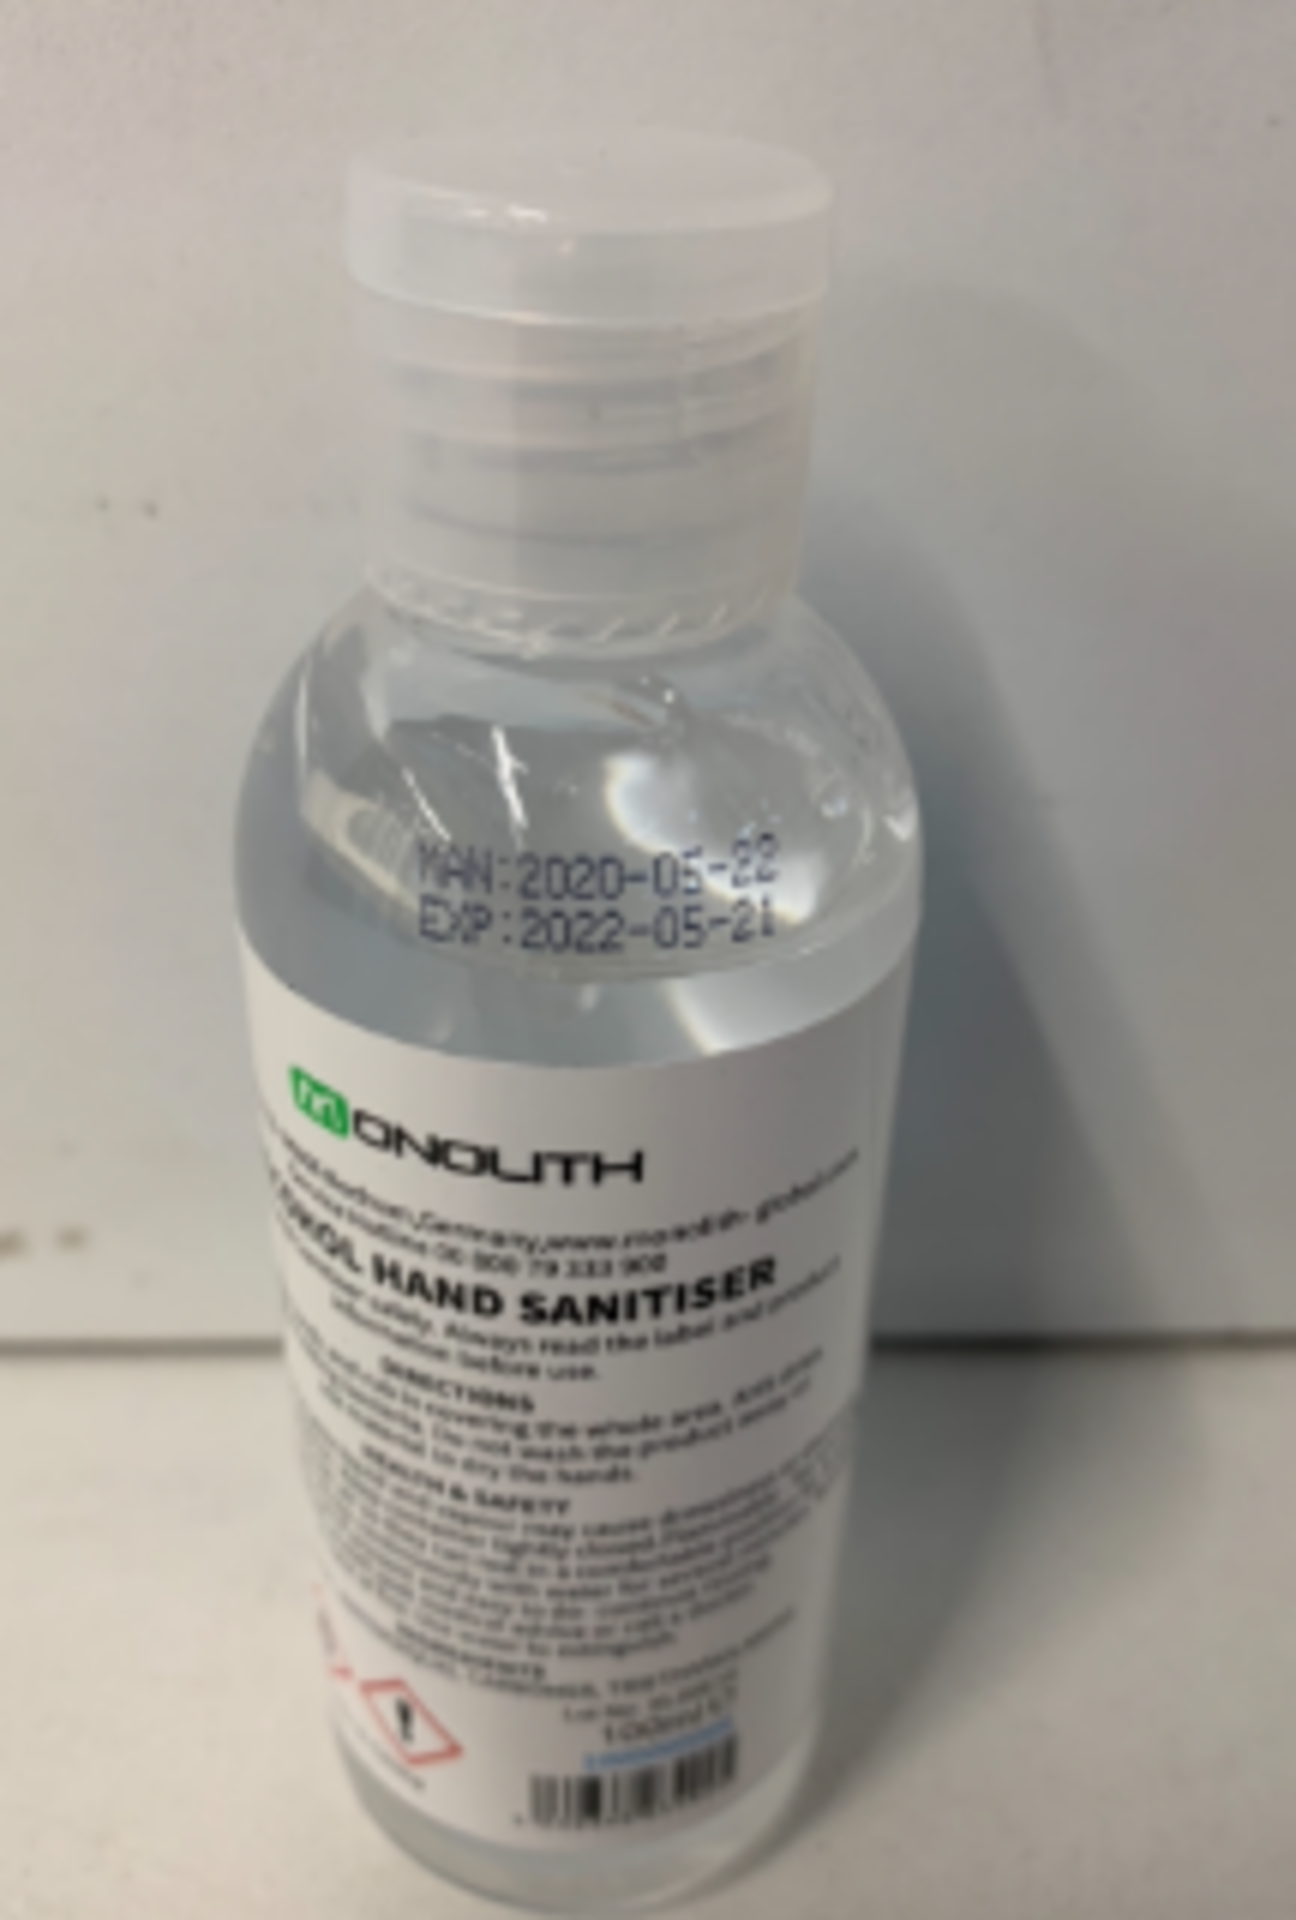 144 x 100ML Bottles Of Monolith Hand Sanitiser - Image 2 of 2